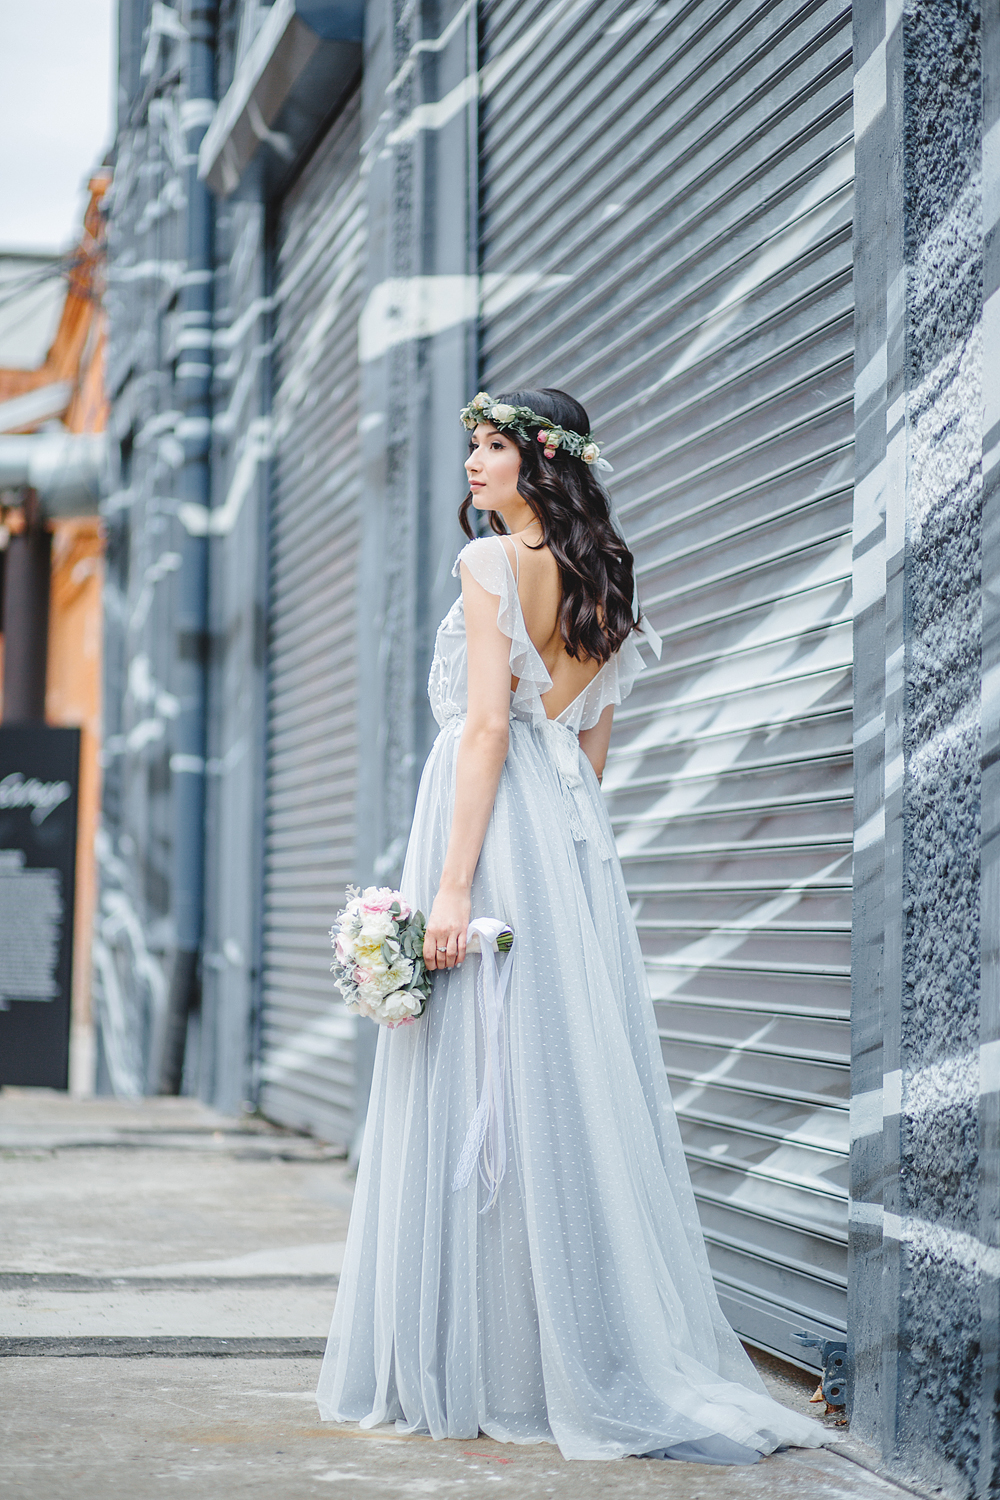 Дымчатое невесомое платье с открытой спинкой утонченной невесты Яны